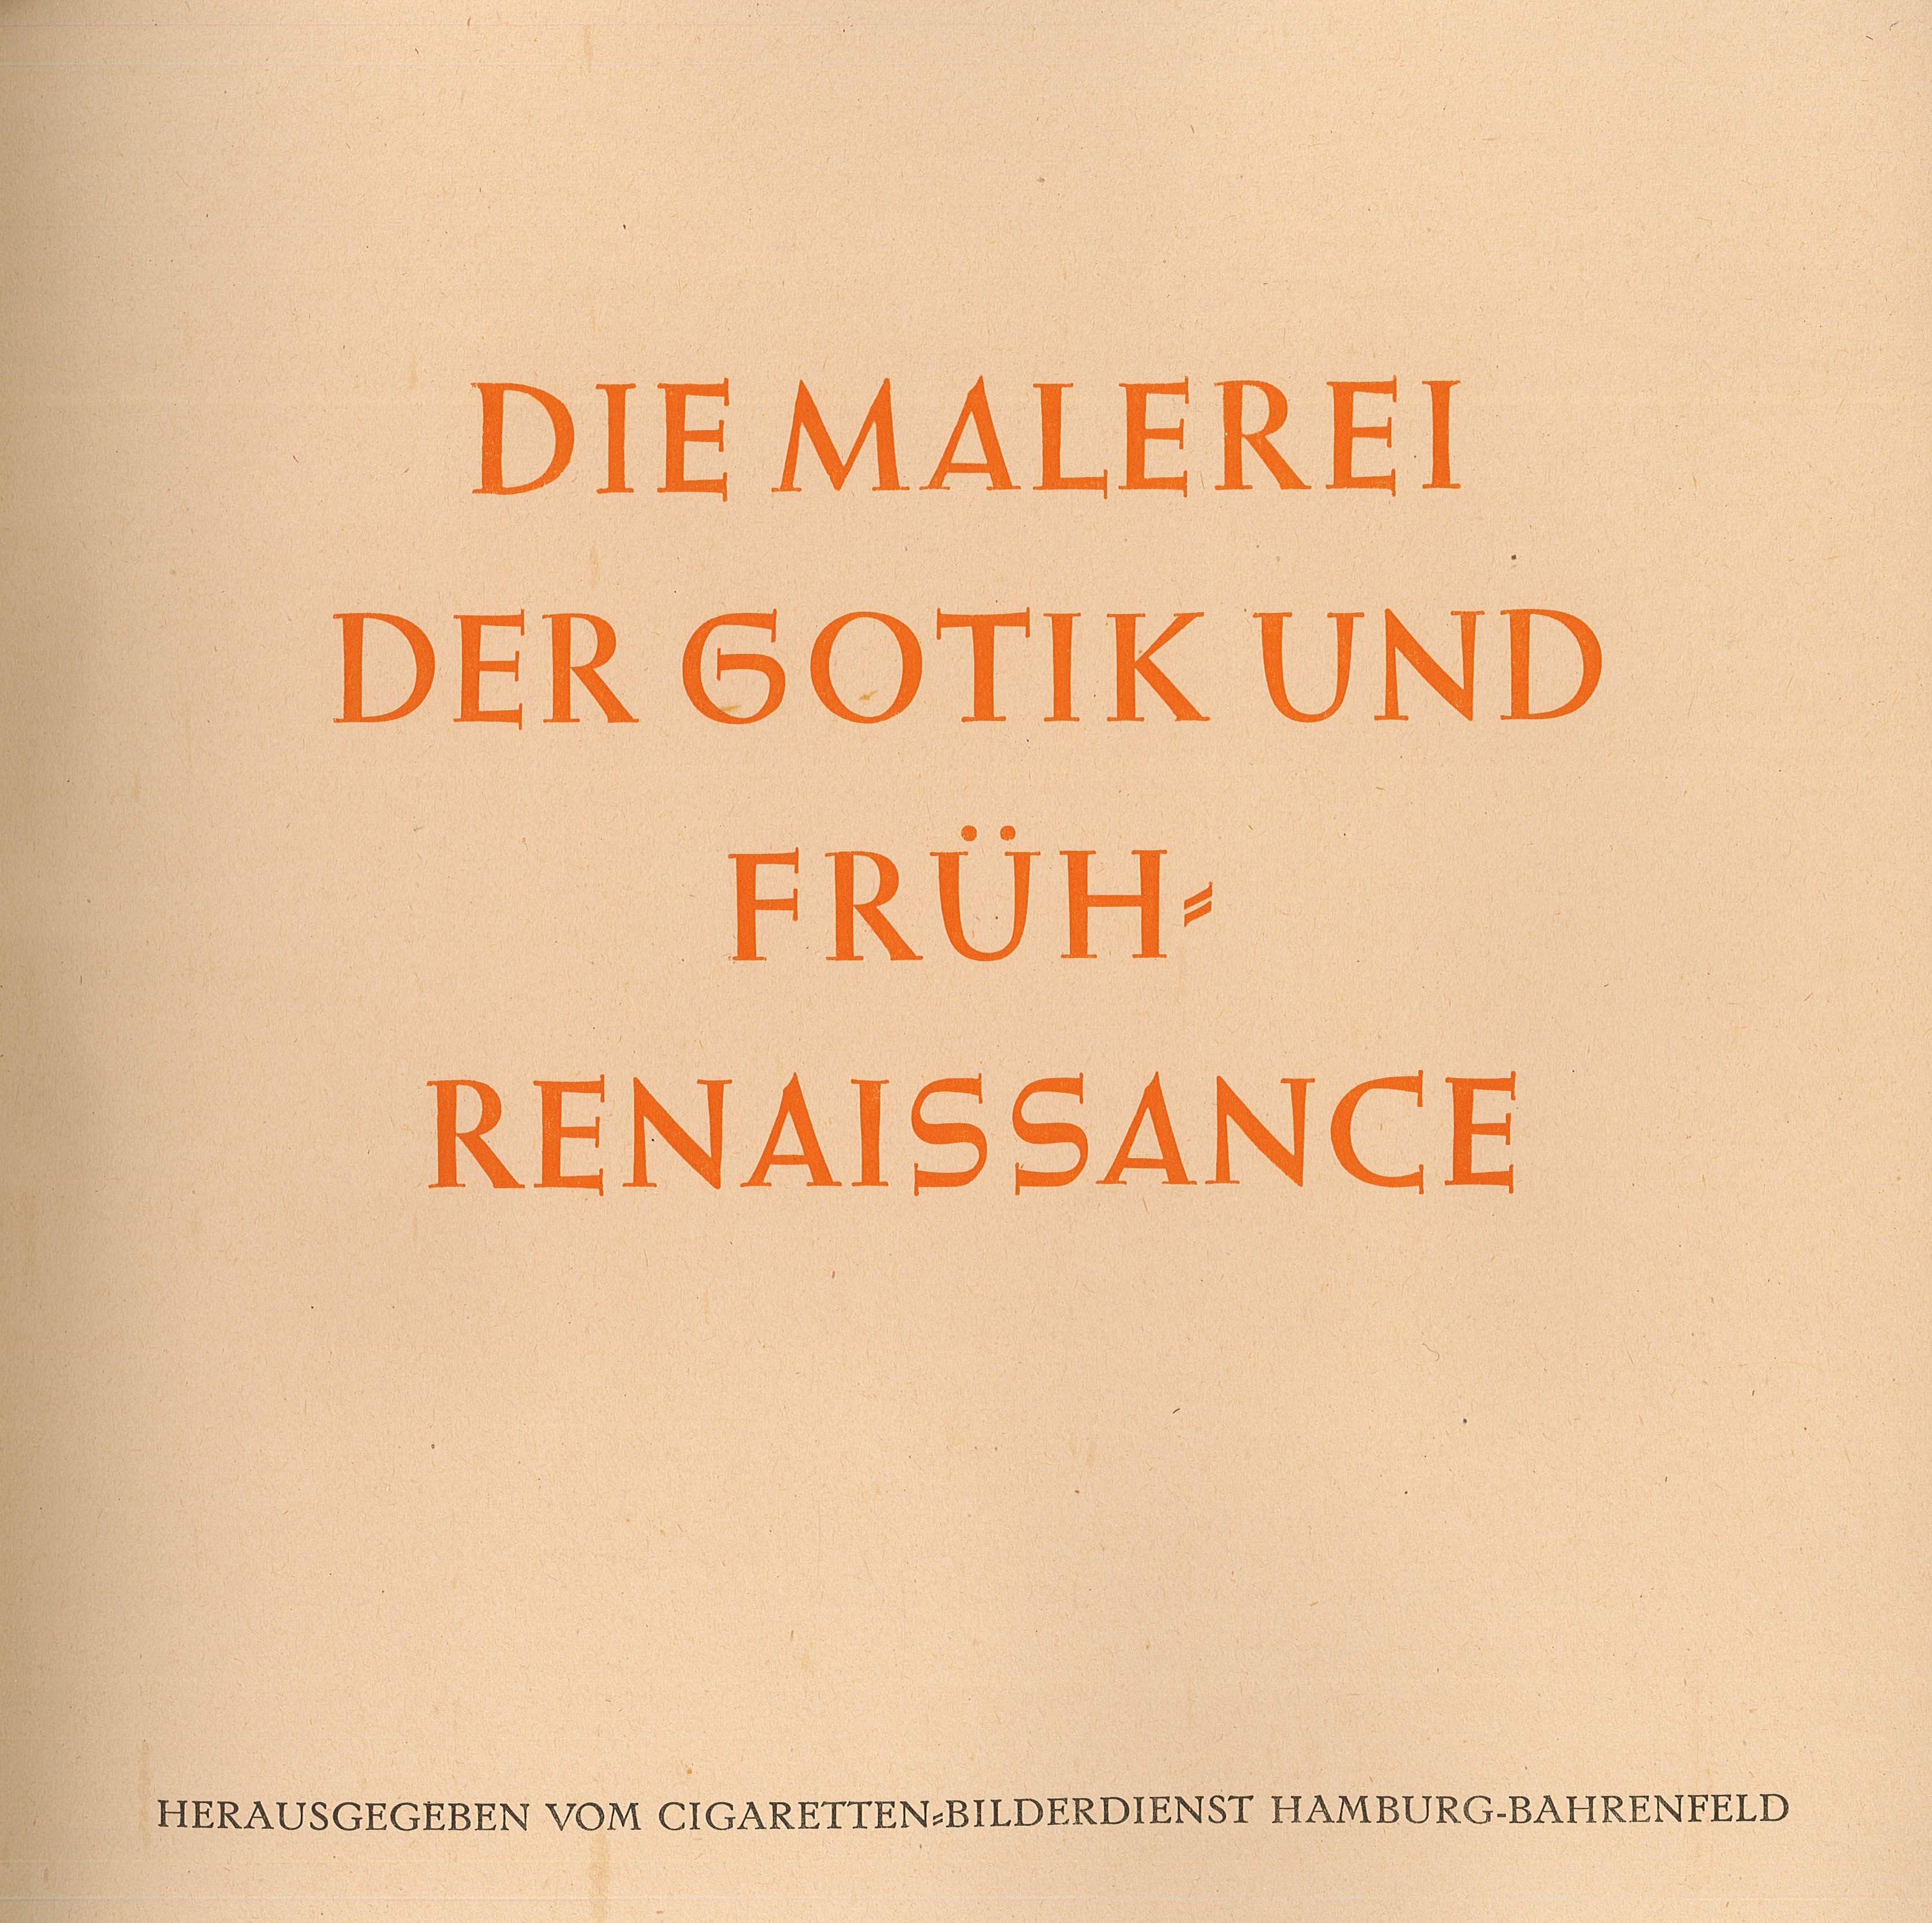 Sammelalbum "Malerei der Gotik und Frührenaissance" (Museum Wolmirstedt RR-F)